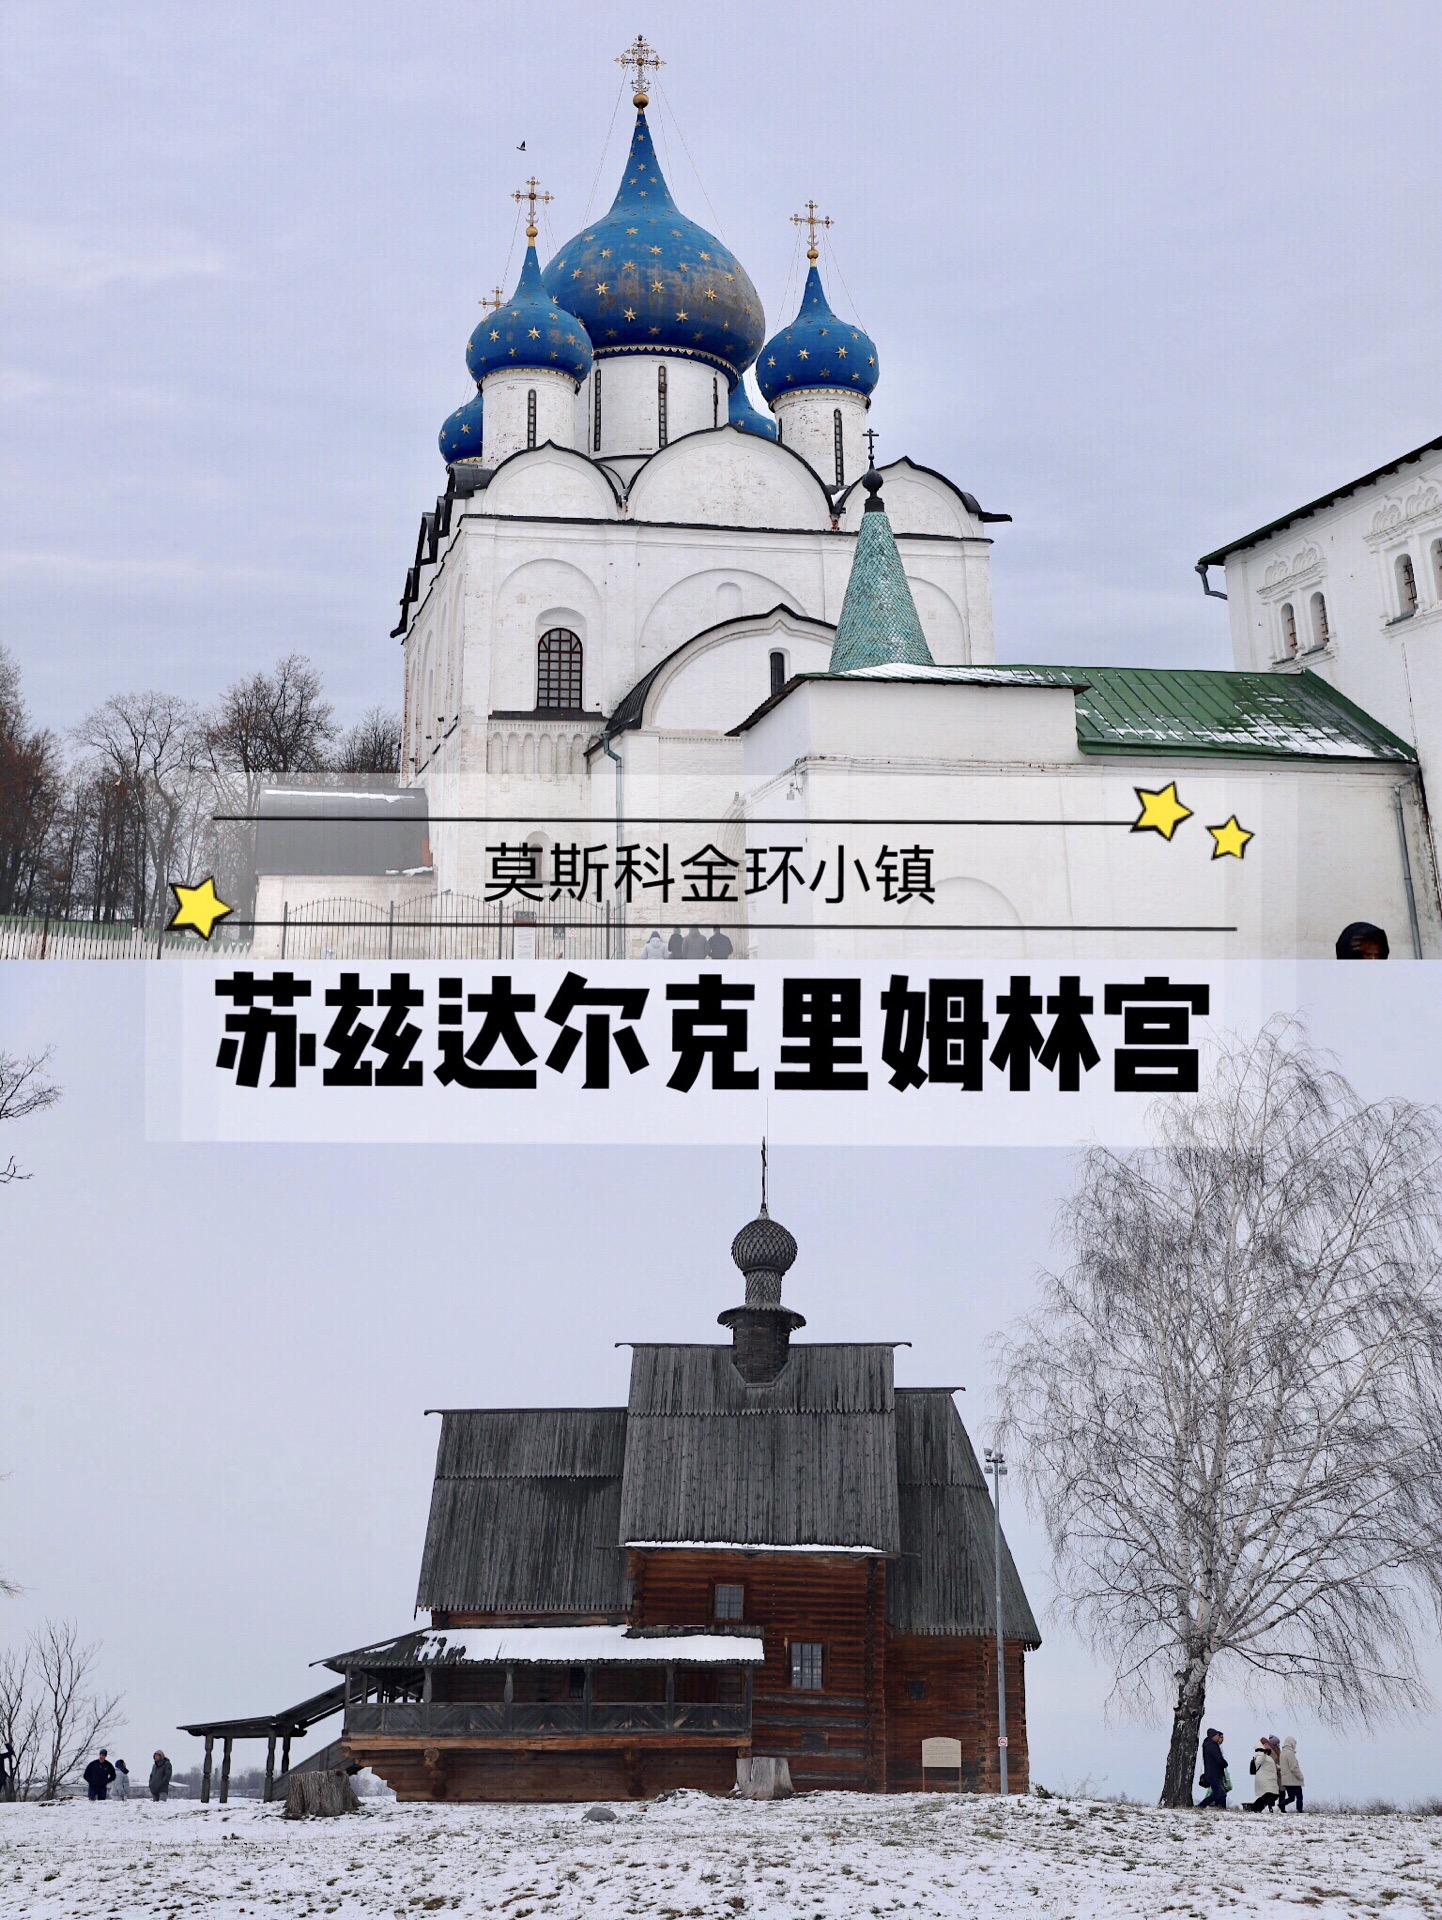 莫斯科金环小镇苏兹达尔🔥👉克里姆林宫  💫苏兹达尔是莫斯科金环小镇上的一个璀璨明珠，苏兹达尔位于弗拉